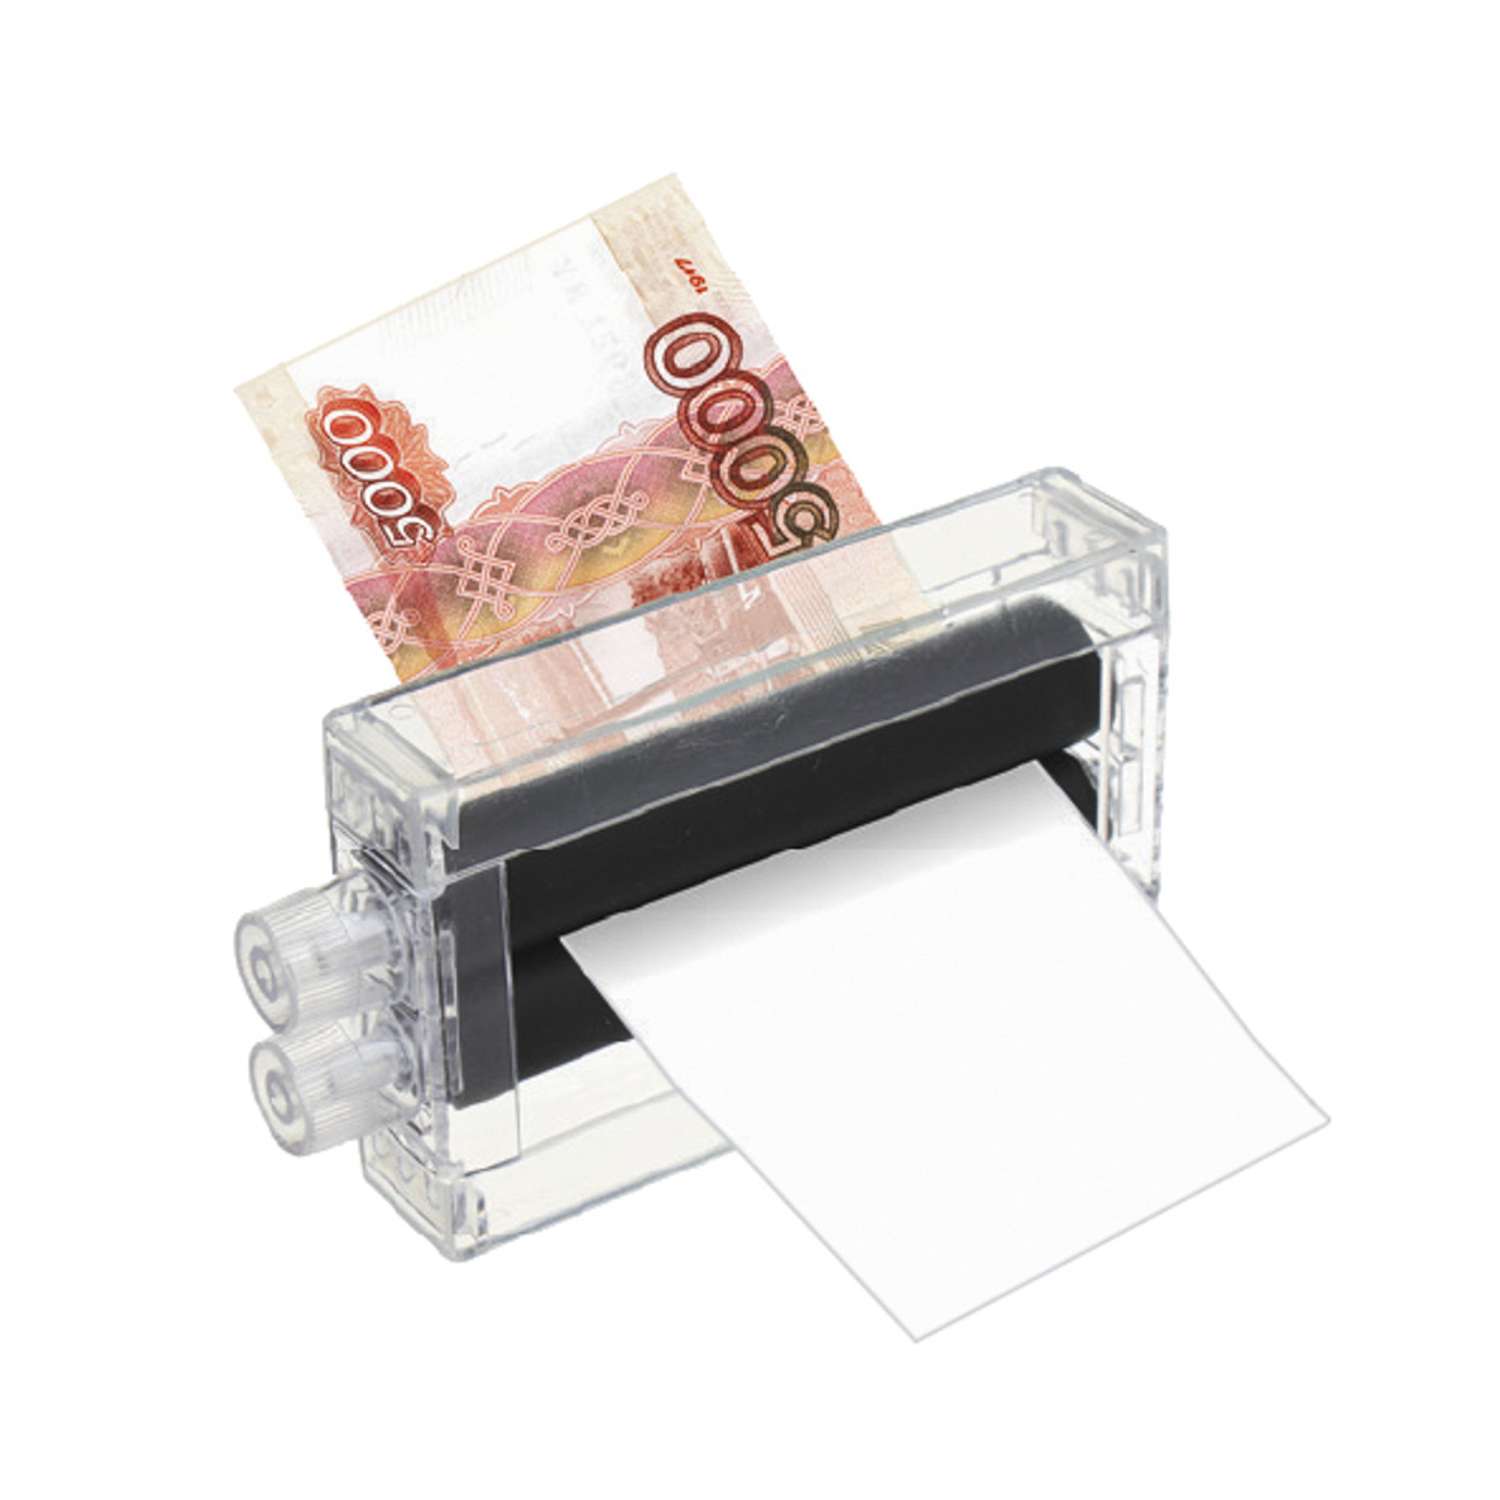 Набор фокусника LDGames машинка для печати денег - фото 2